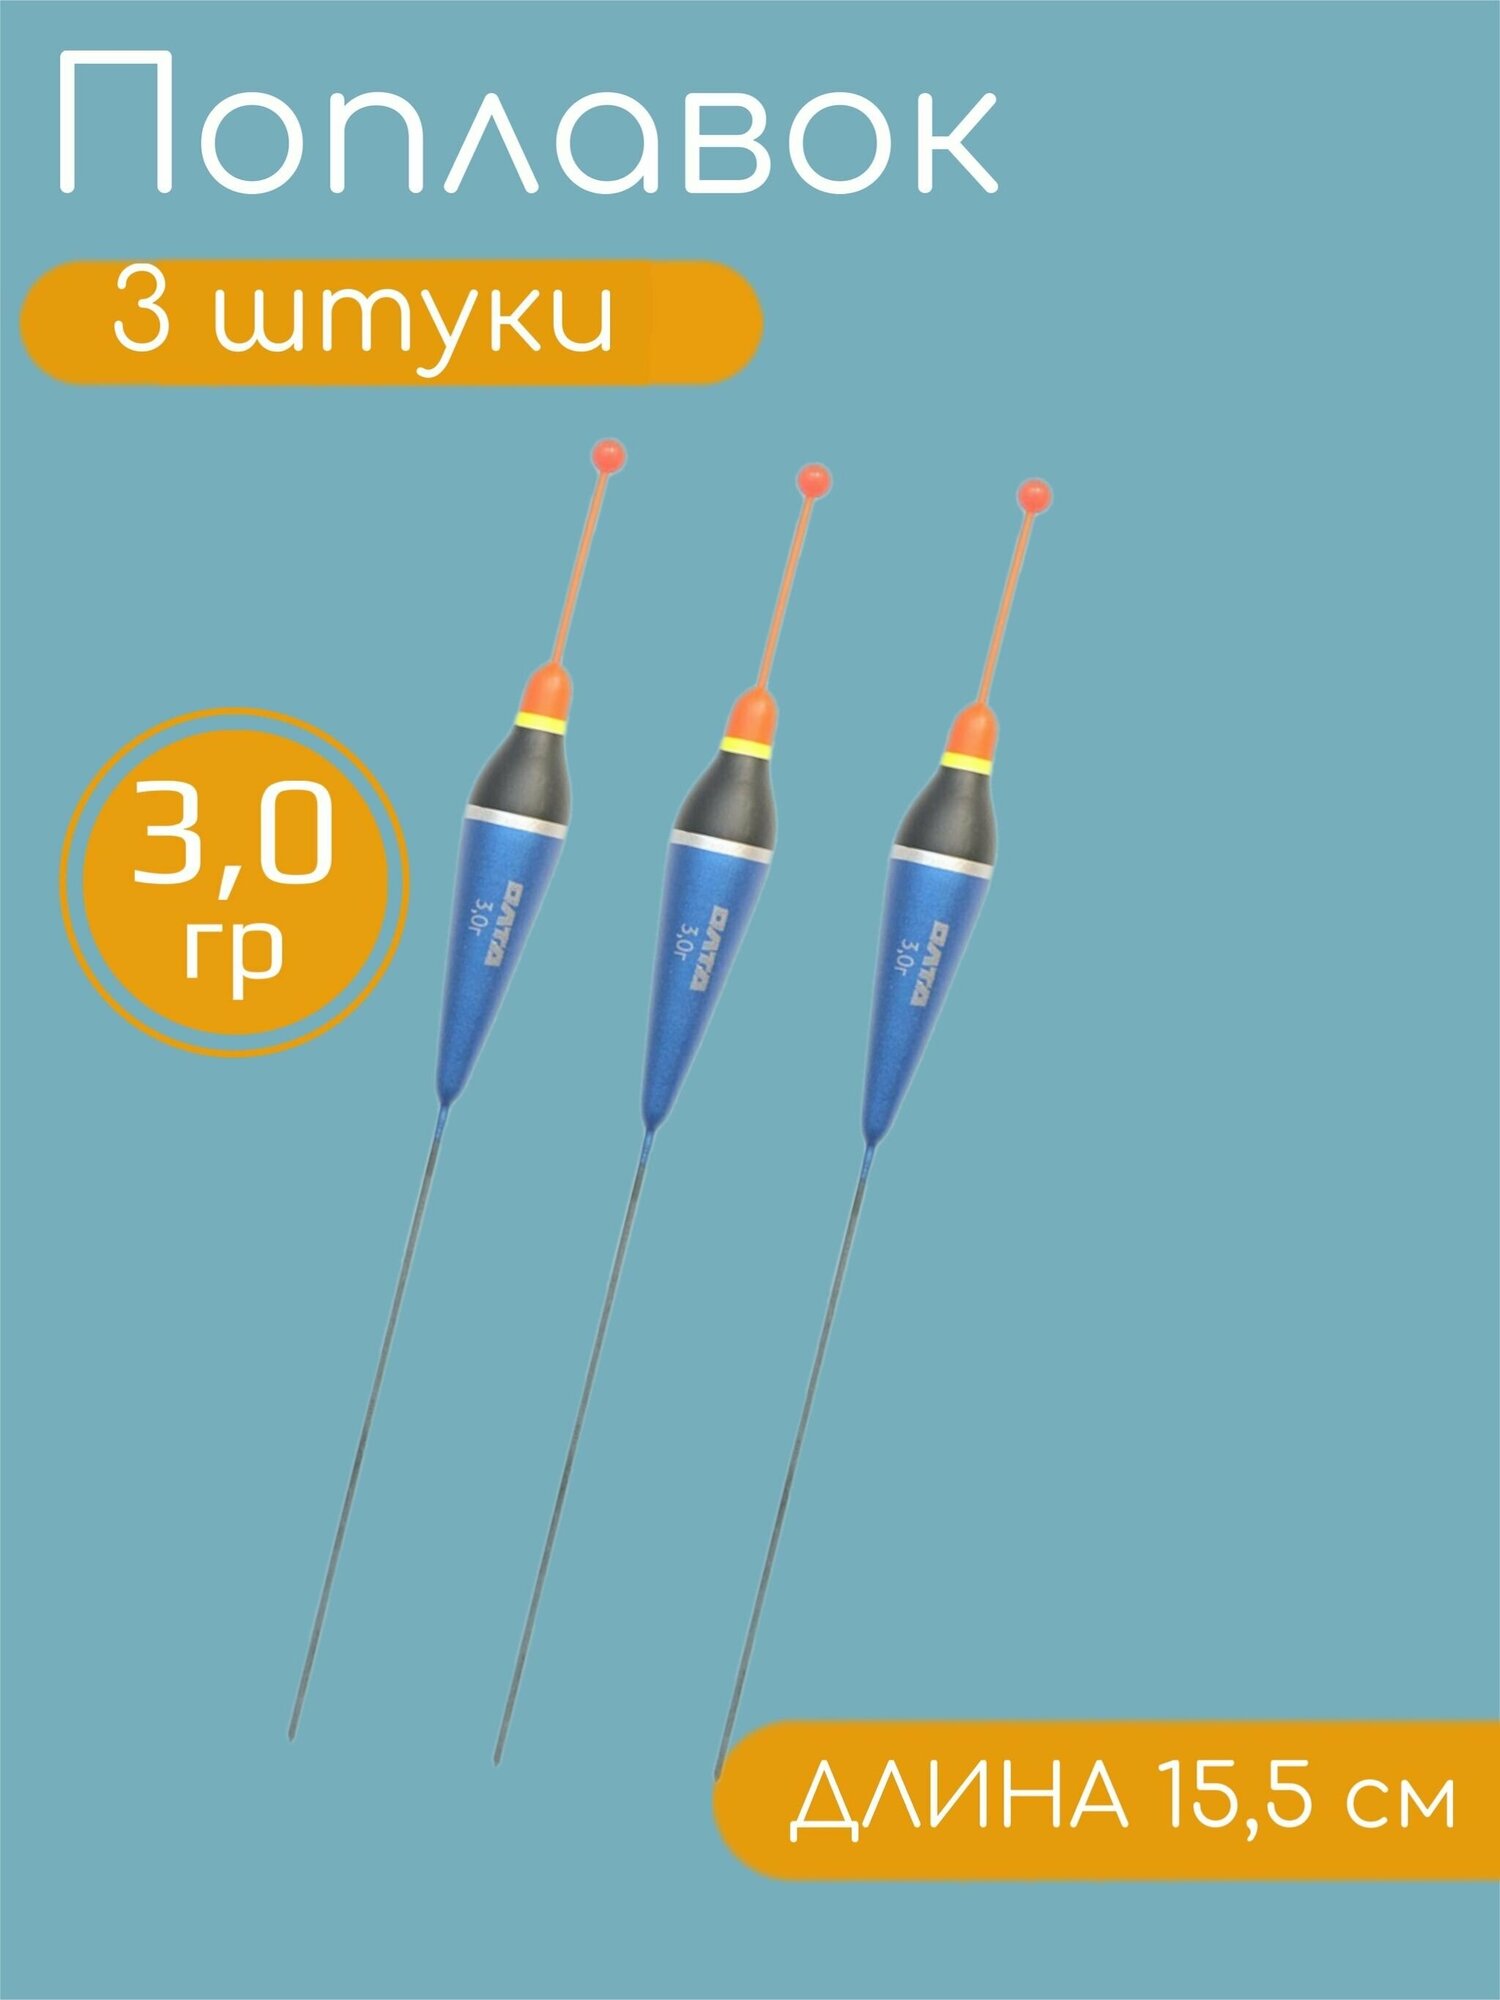 3 штуки Рыболовный Поплавок из бальсы для летней рыбалки 3.0гр, 15.5см